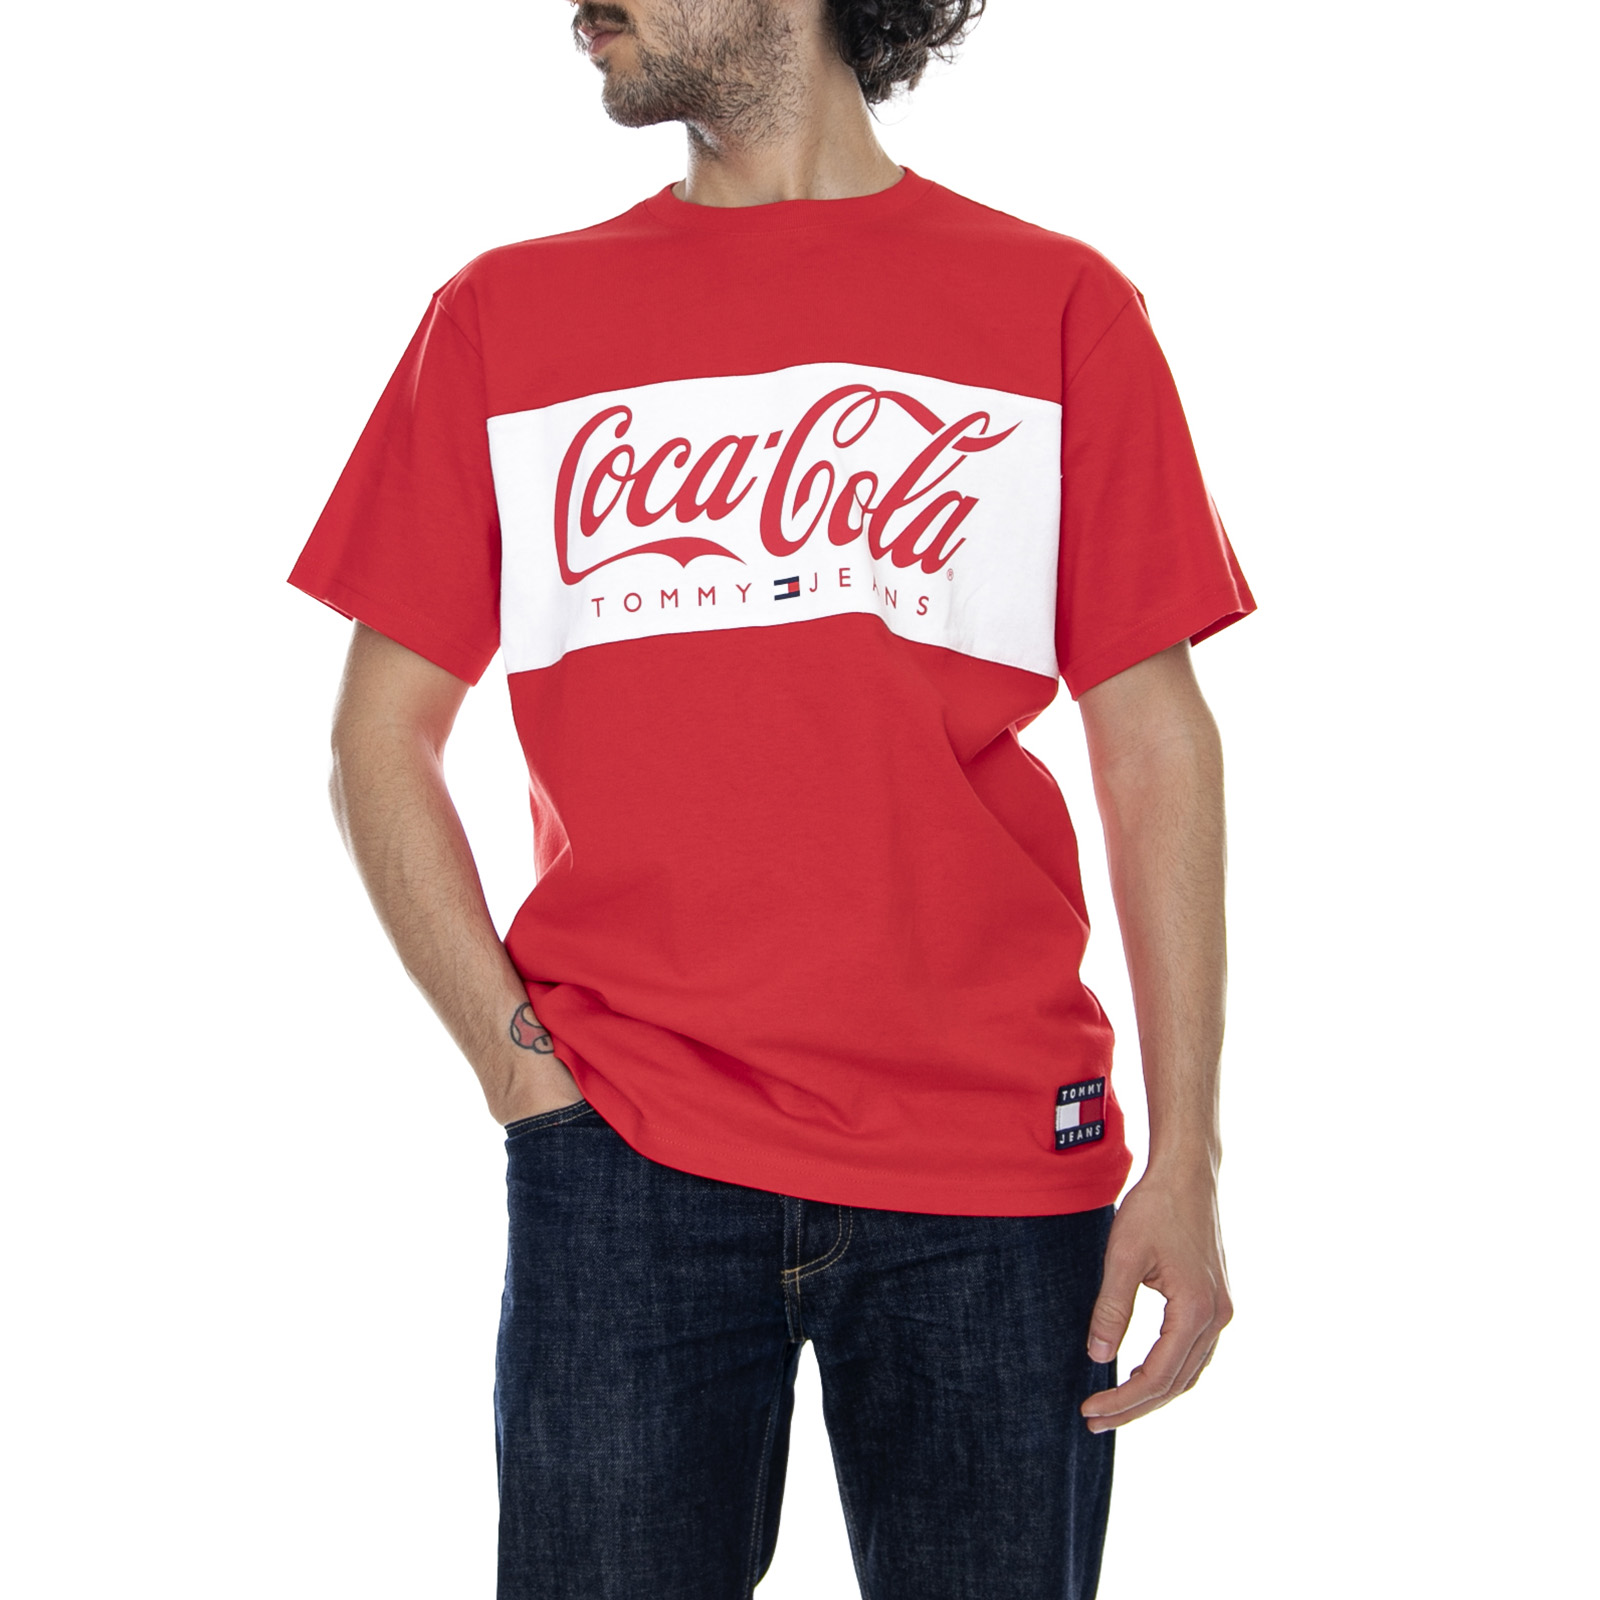 tommy hilfiger coca cola t shirt